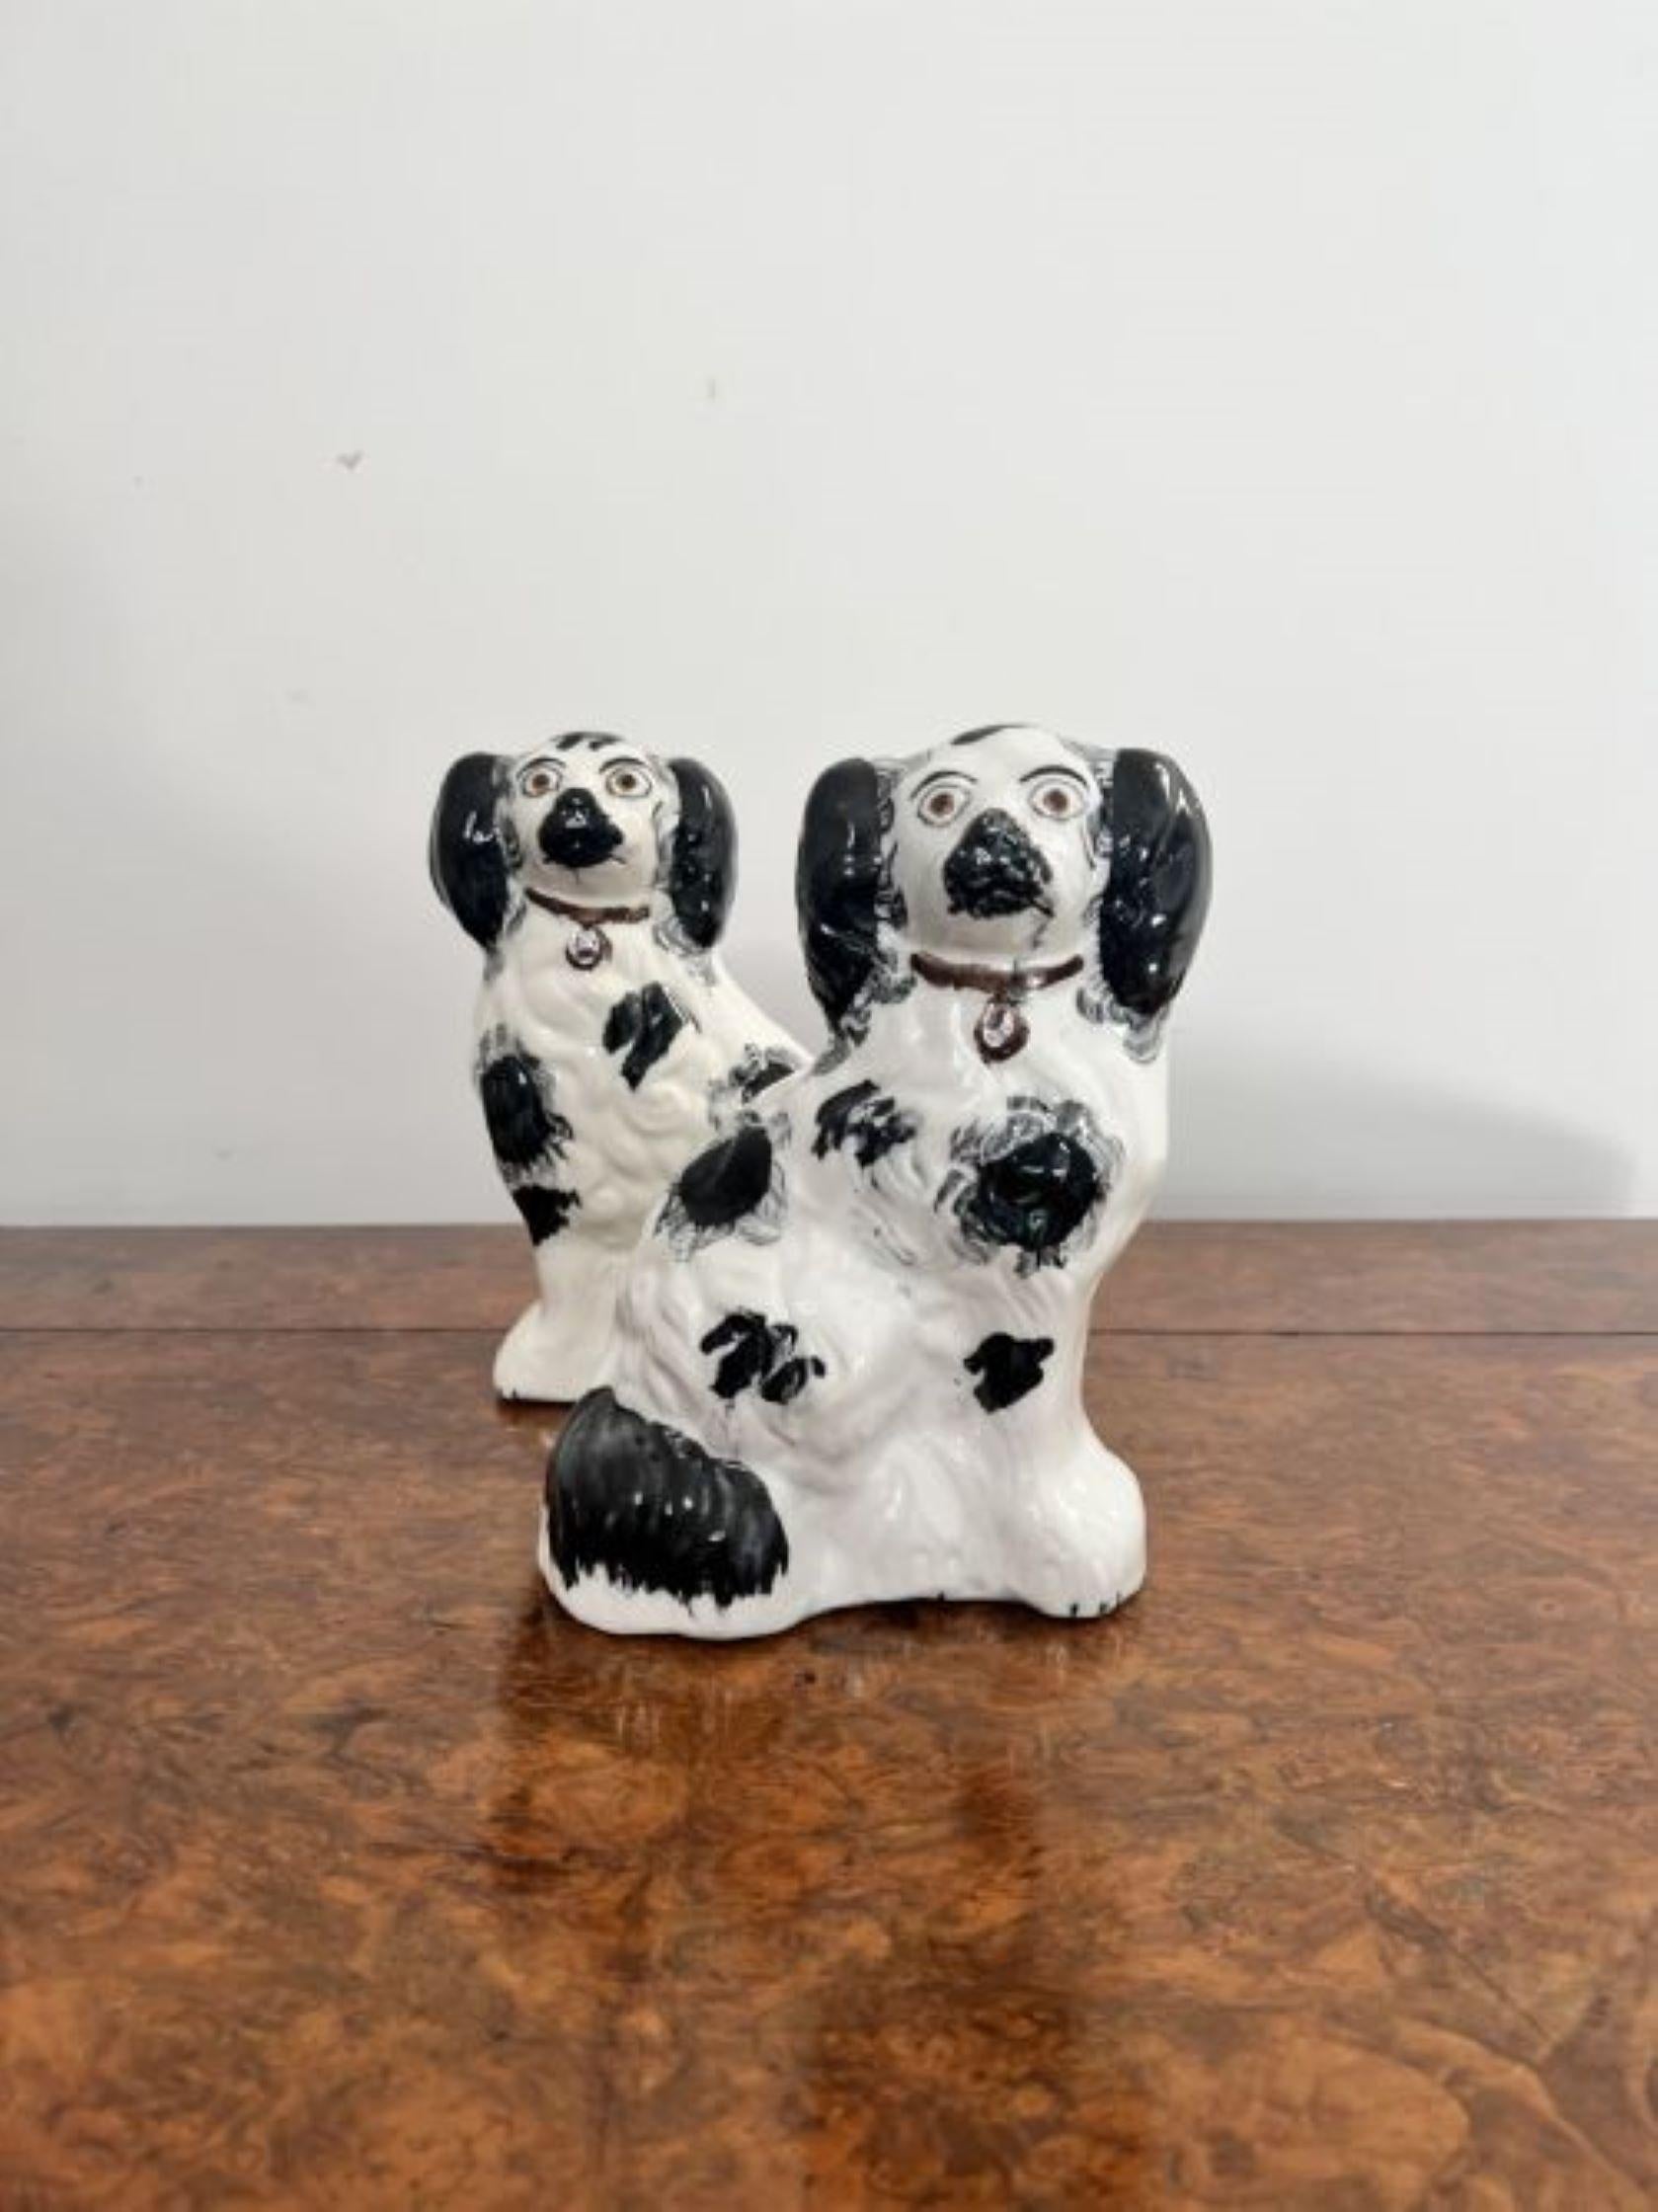 Qualität Paar antike viktorianische Miniatur Staffordshire Hunde mit einer Qualität Paar antike viktorianische Staffordshire Hunde mit passenden schwarzen und weißen Mänteln mit braunen Halsbändern. 